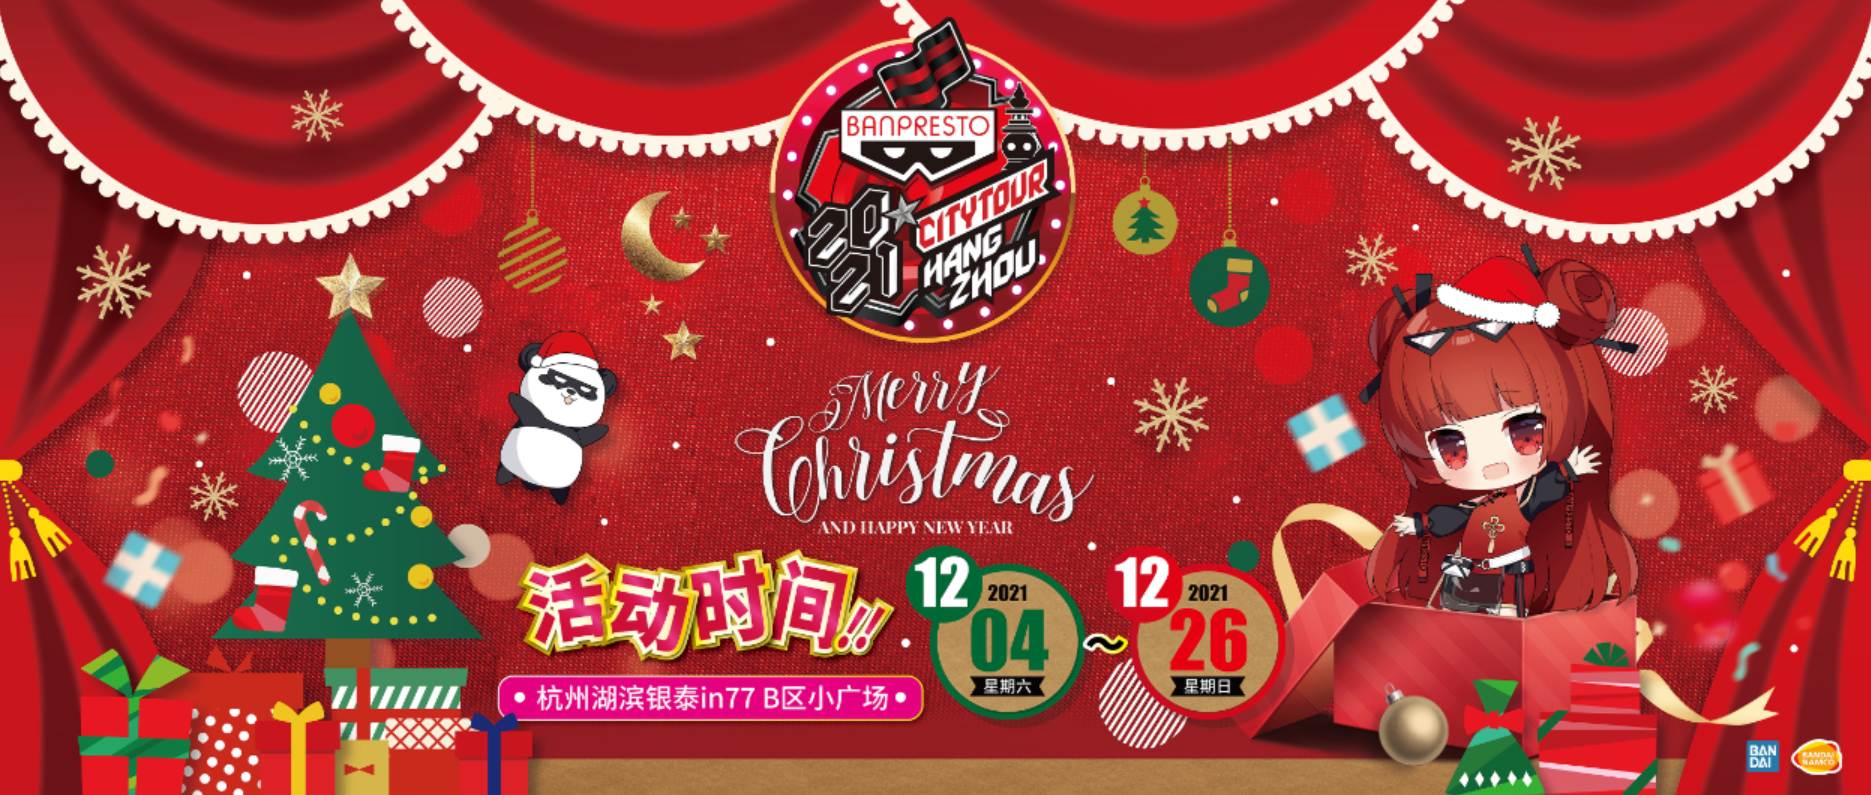 人气动漫和手办爱好者的圣诞派对，齐聚BANPRESTO城市巡展杭州站-翼萌网